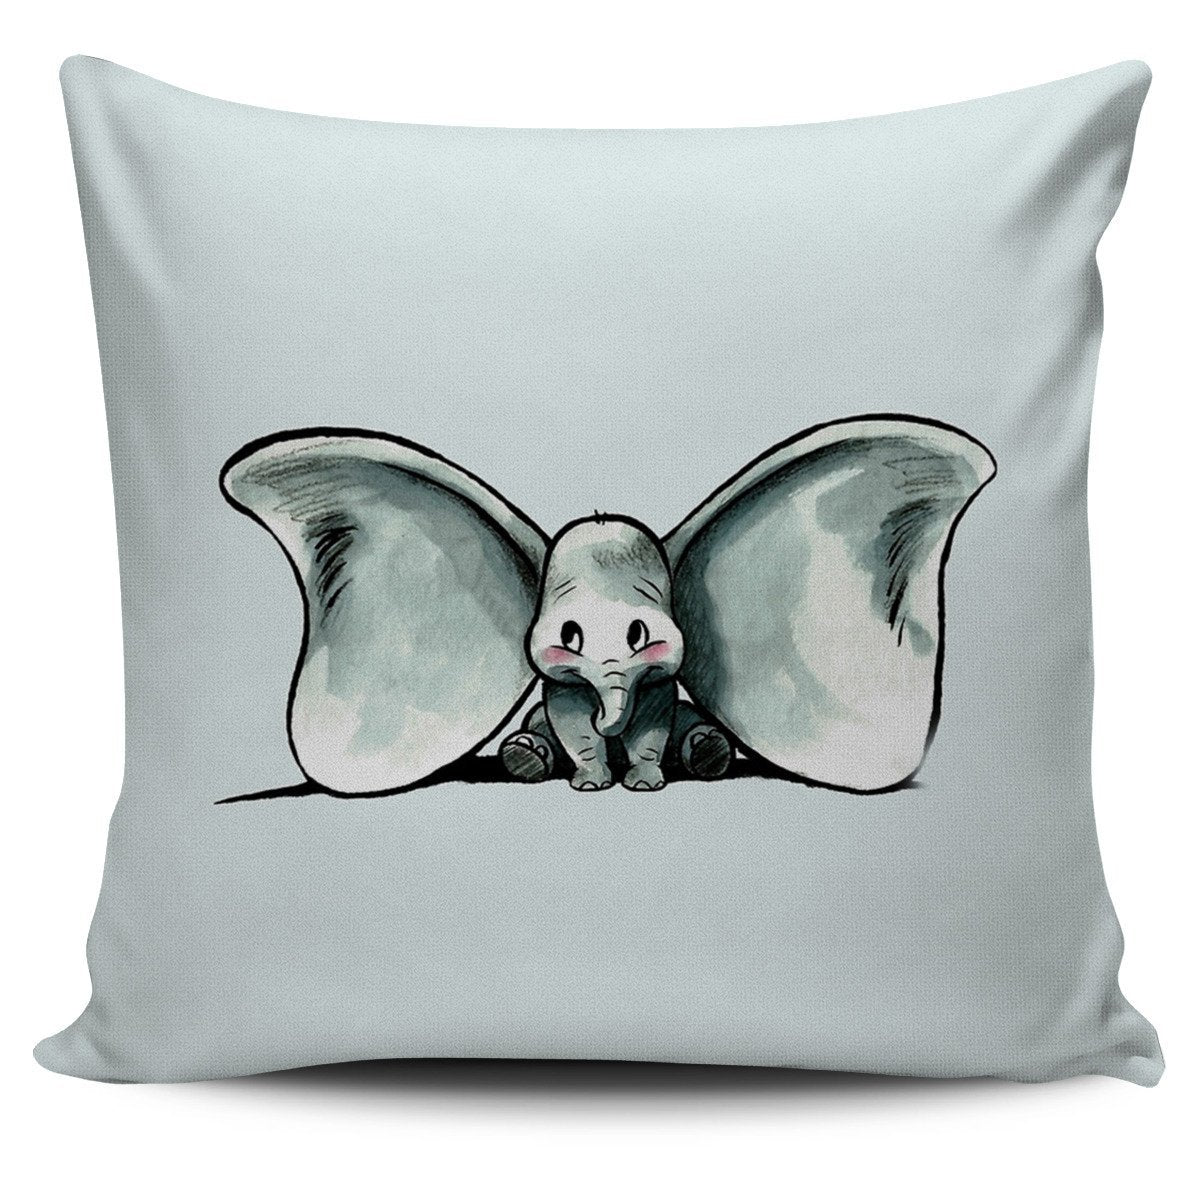 Dumbo Elephant Pillow Cover